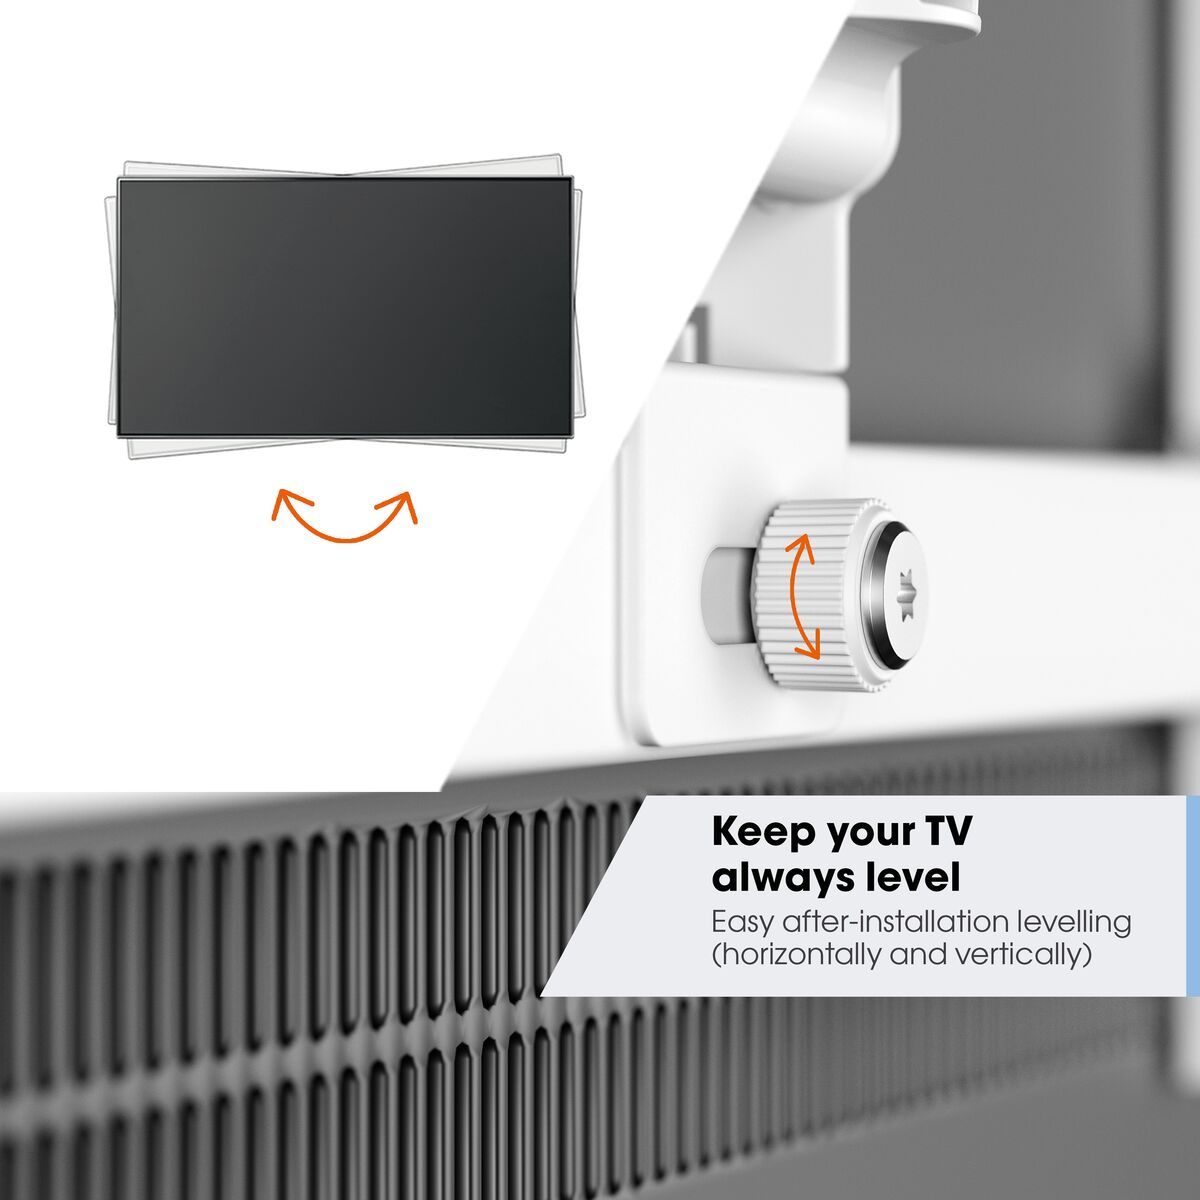 Vogel's TVM 3245 Schwenkbare TV-Wandhalterung (Weiß) - Geeignet für Fernseher von 19 bis 43 Zoll - Voll beweglich (bis zu 180°) schwenkbar - Bis zu 20° neigbar - USP